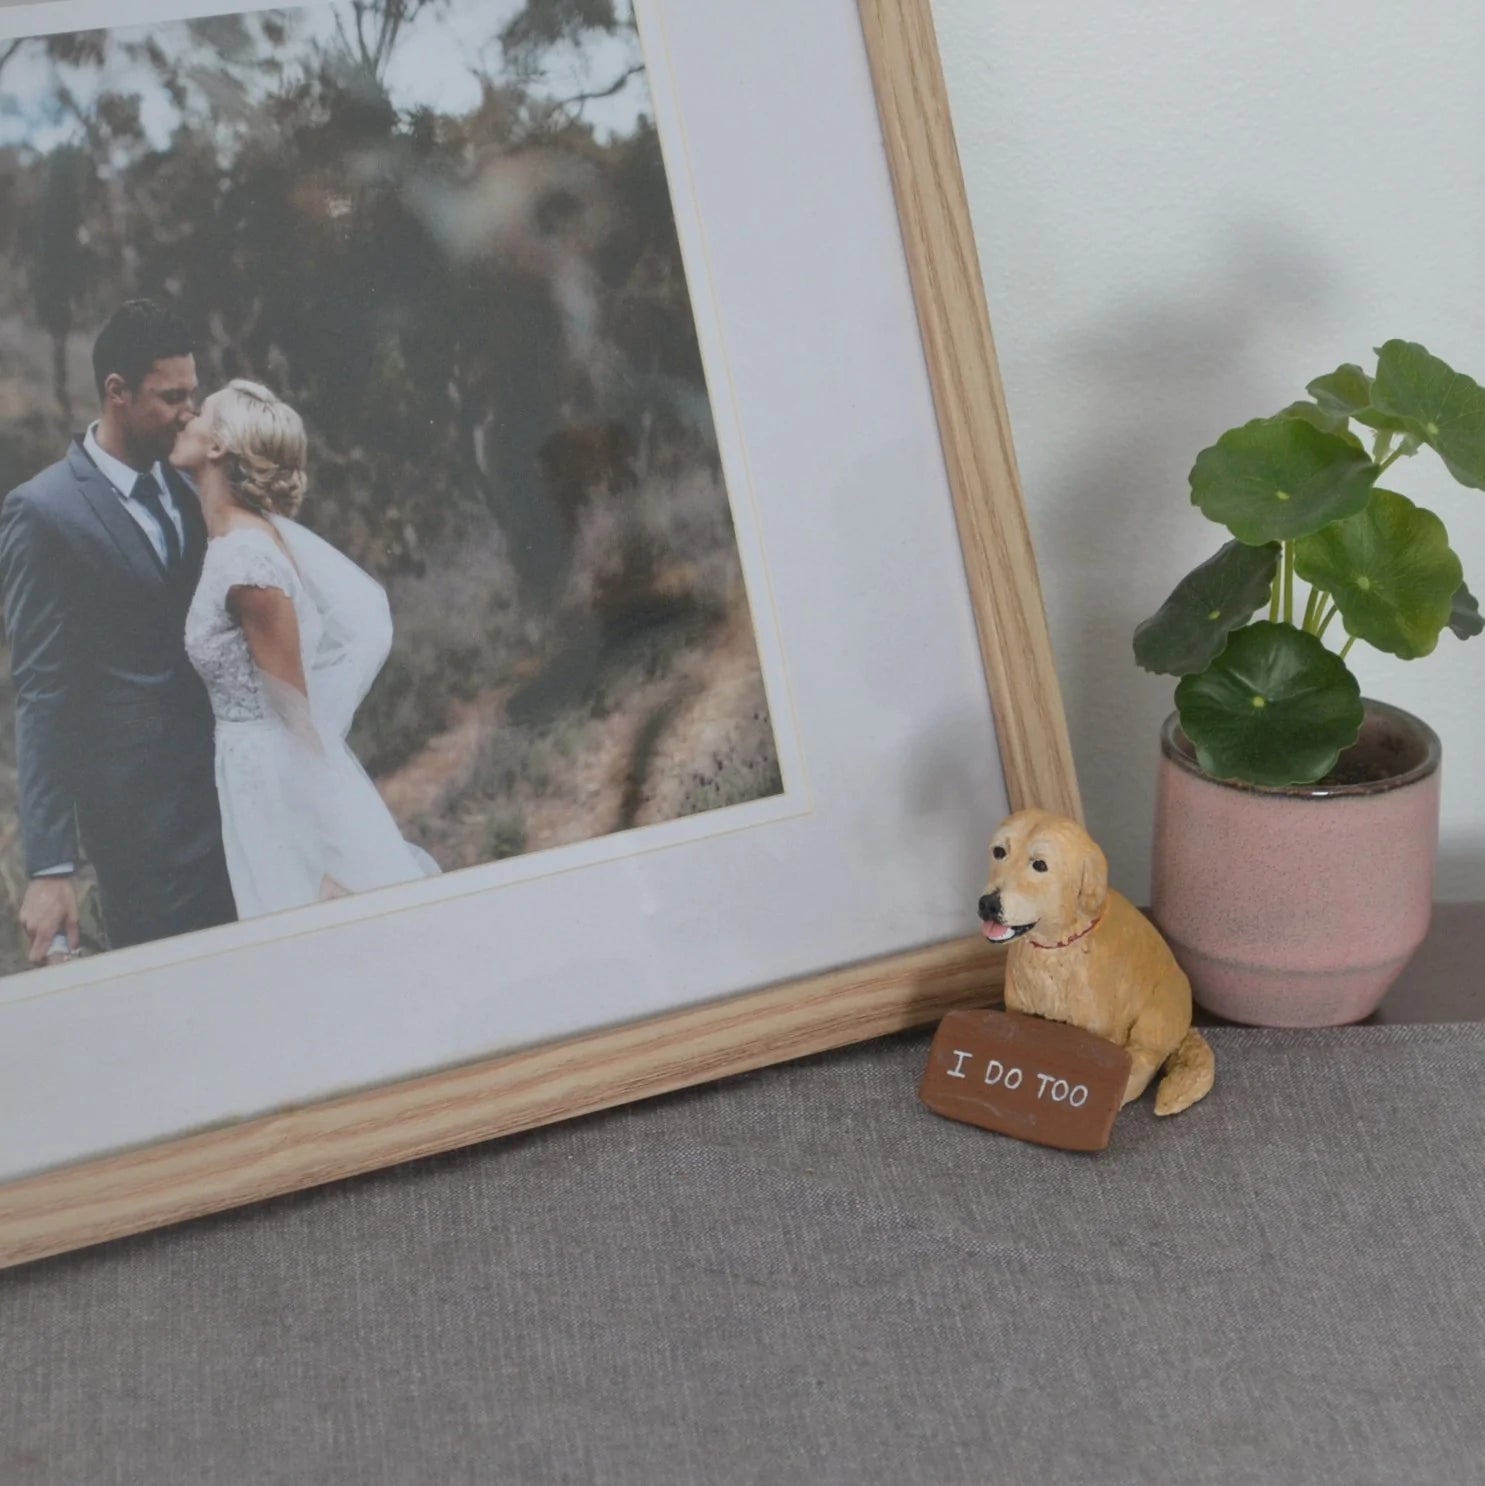 Handmade Golden retriever dog figurine beside a photo frame